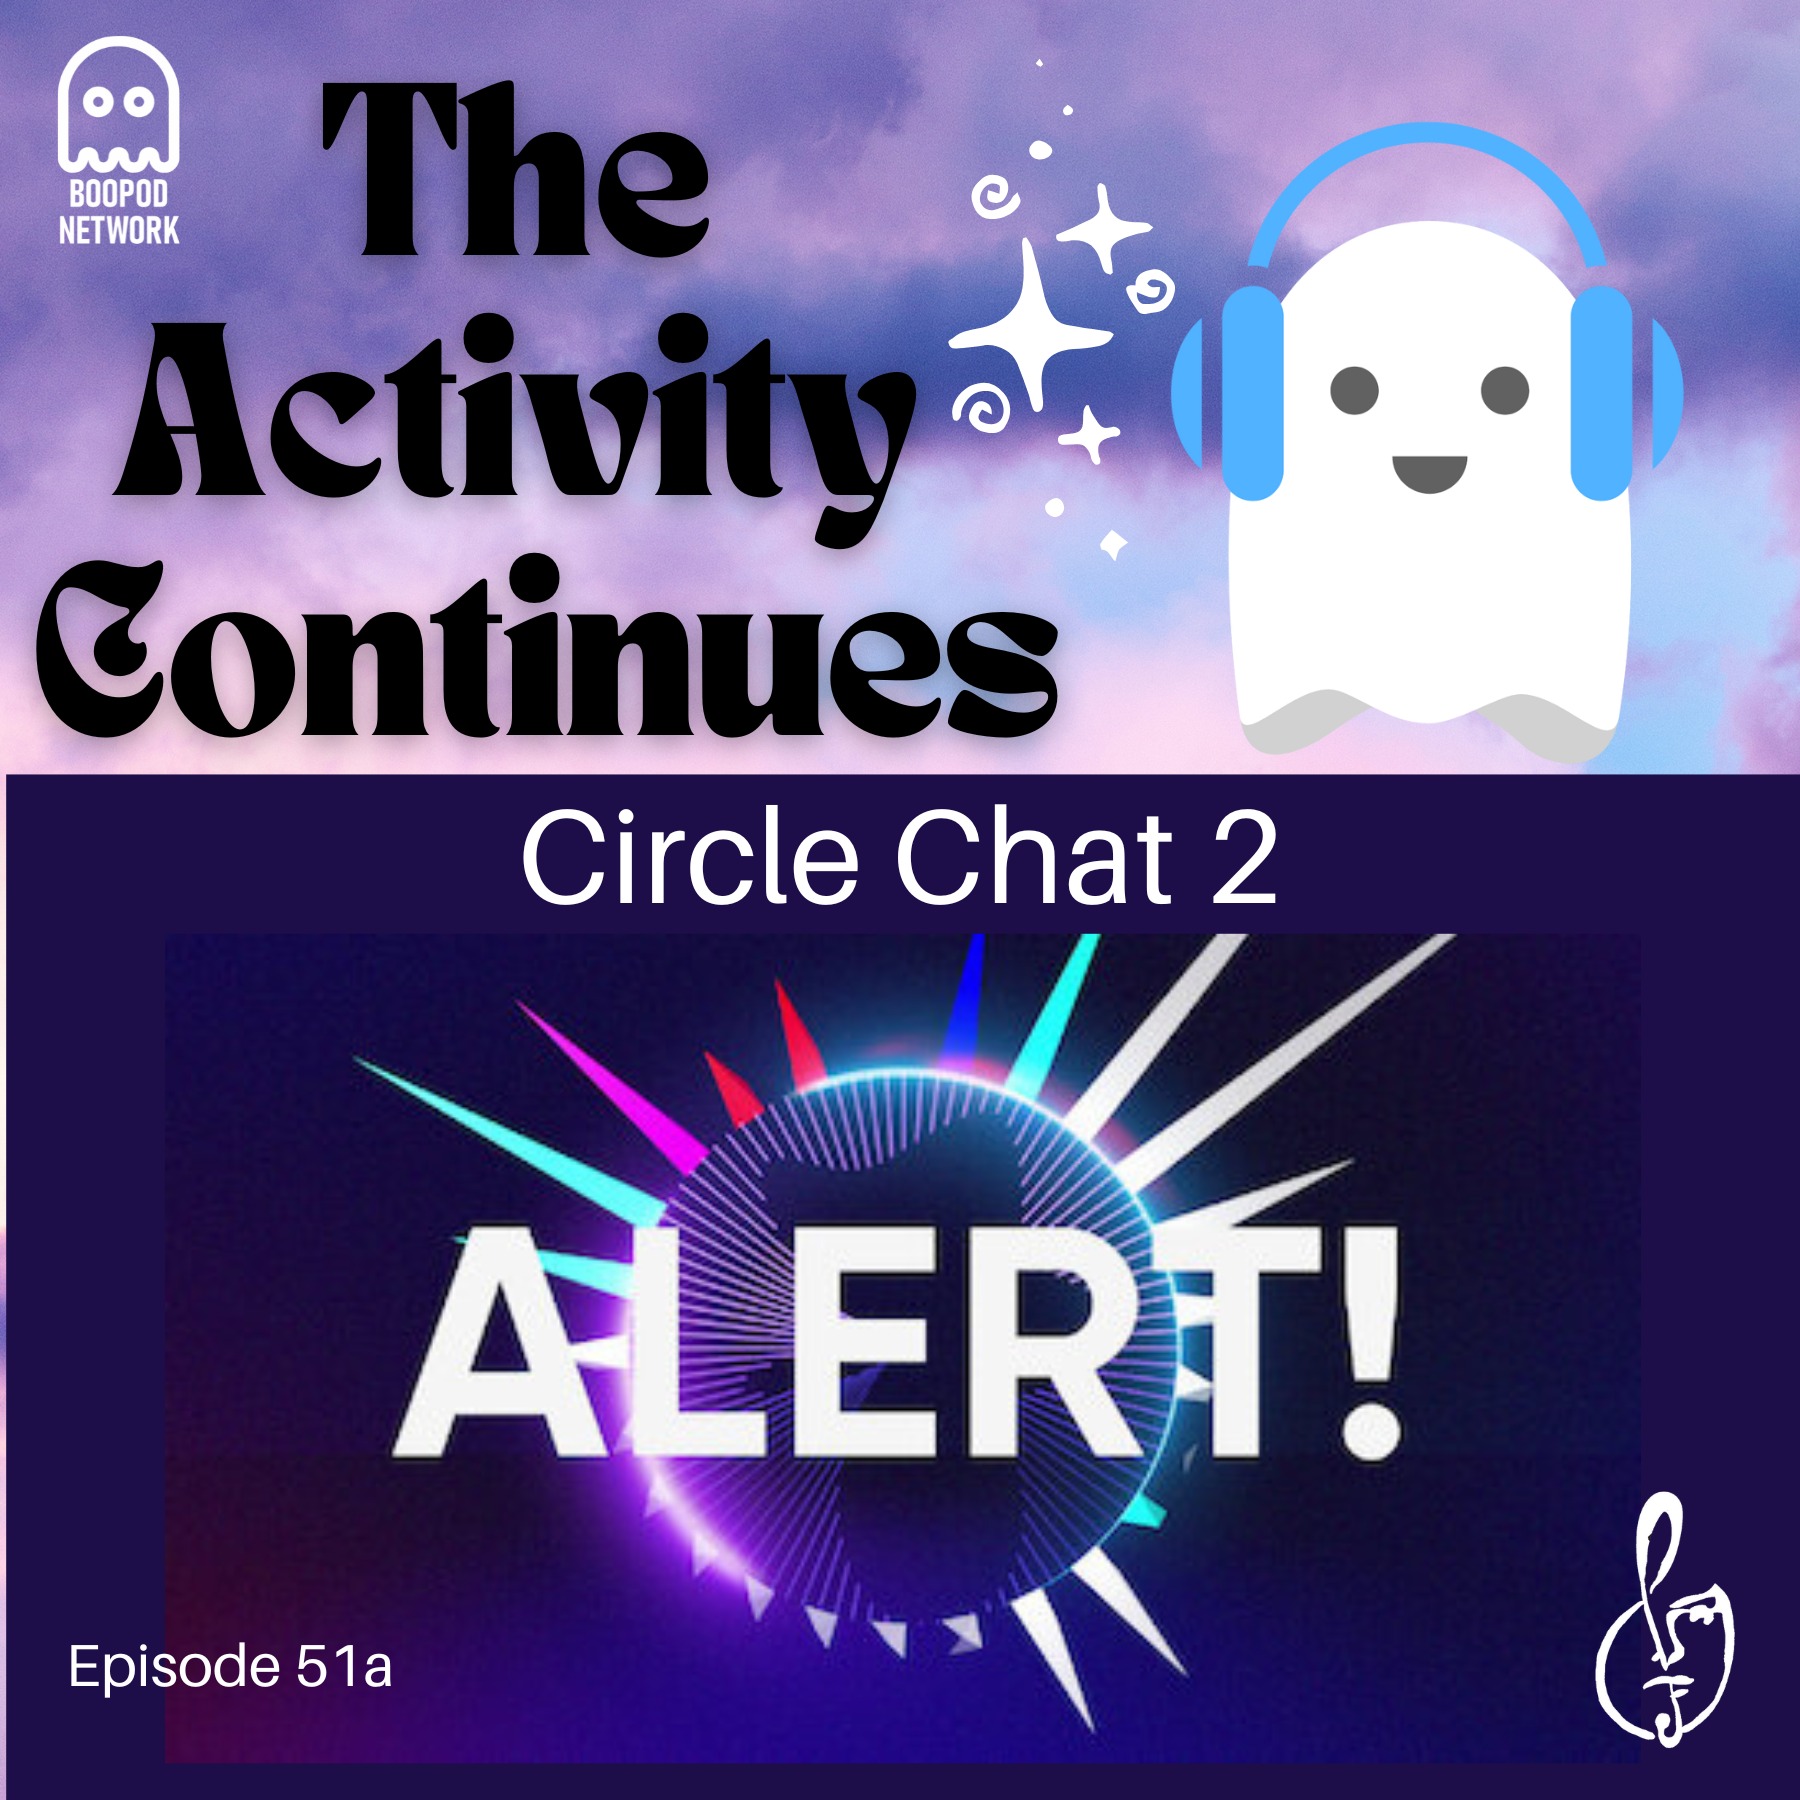 Circle Chat 2